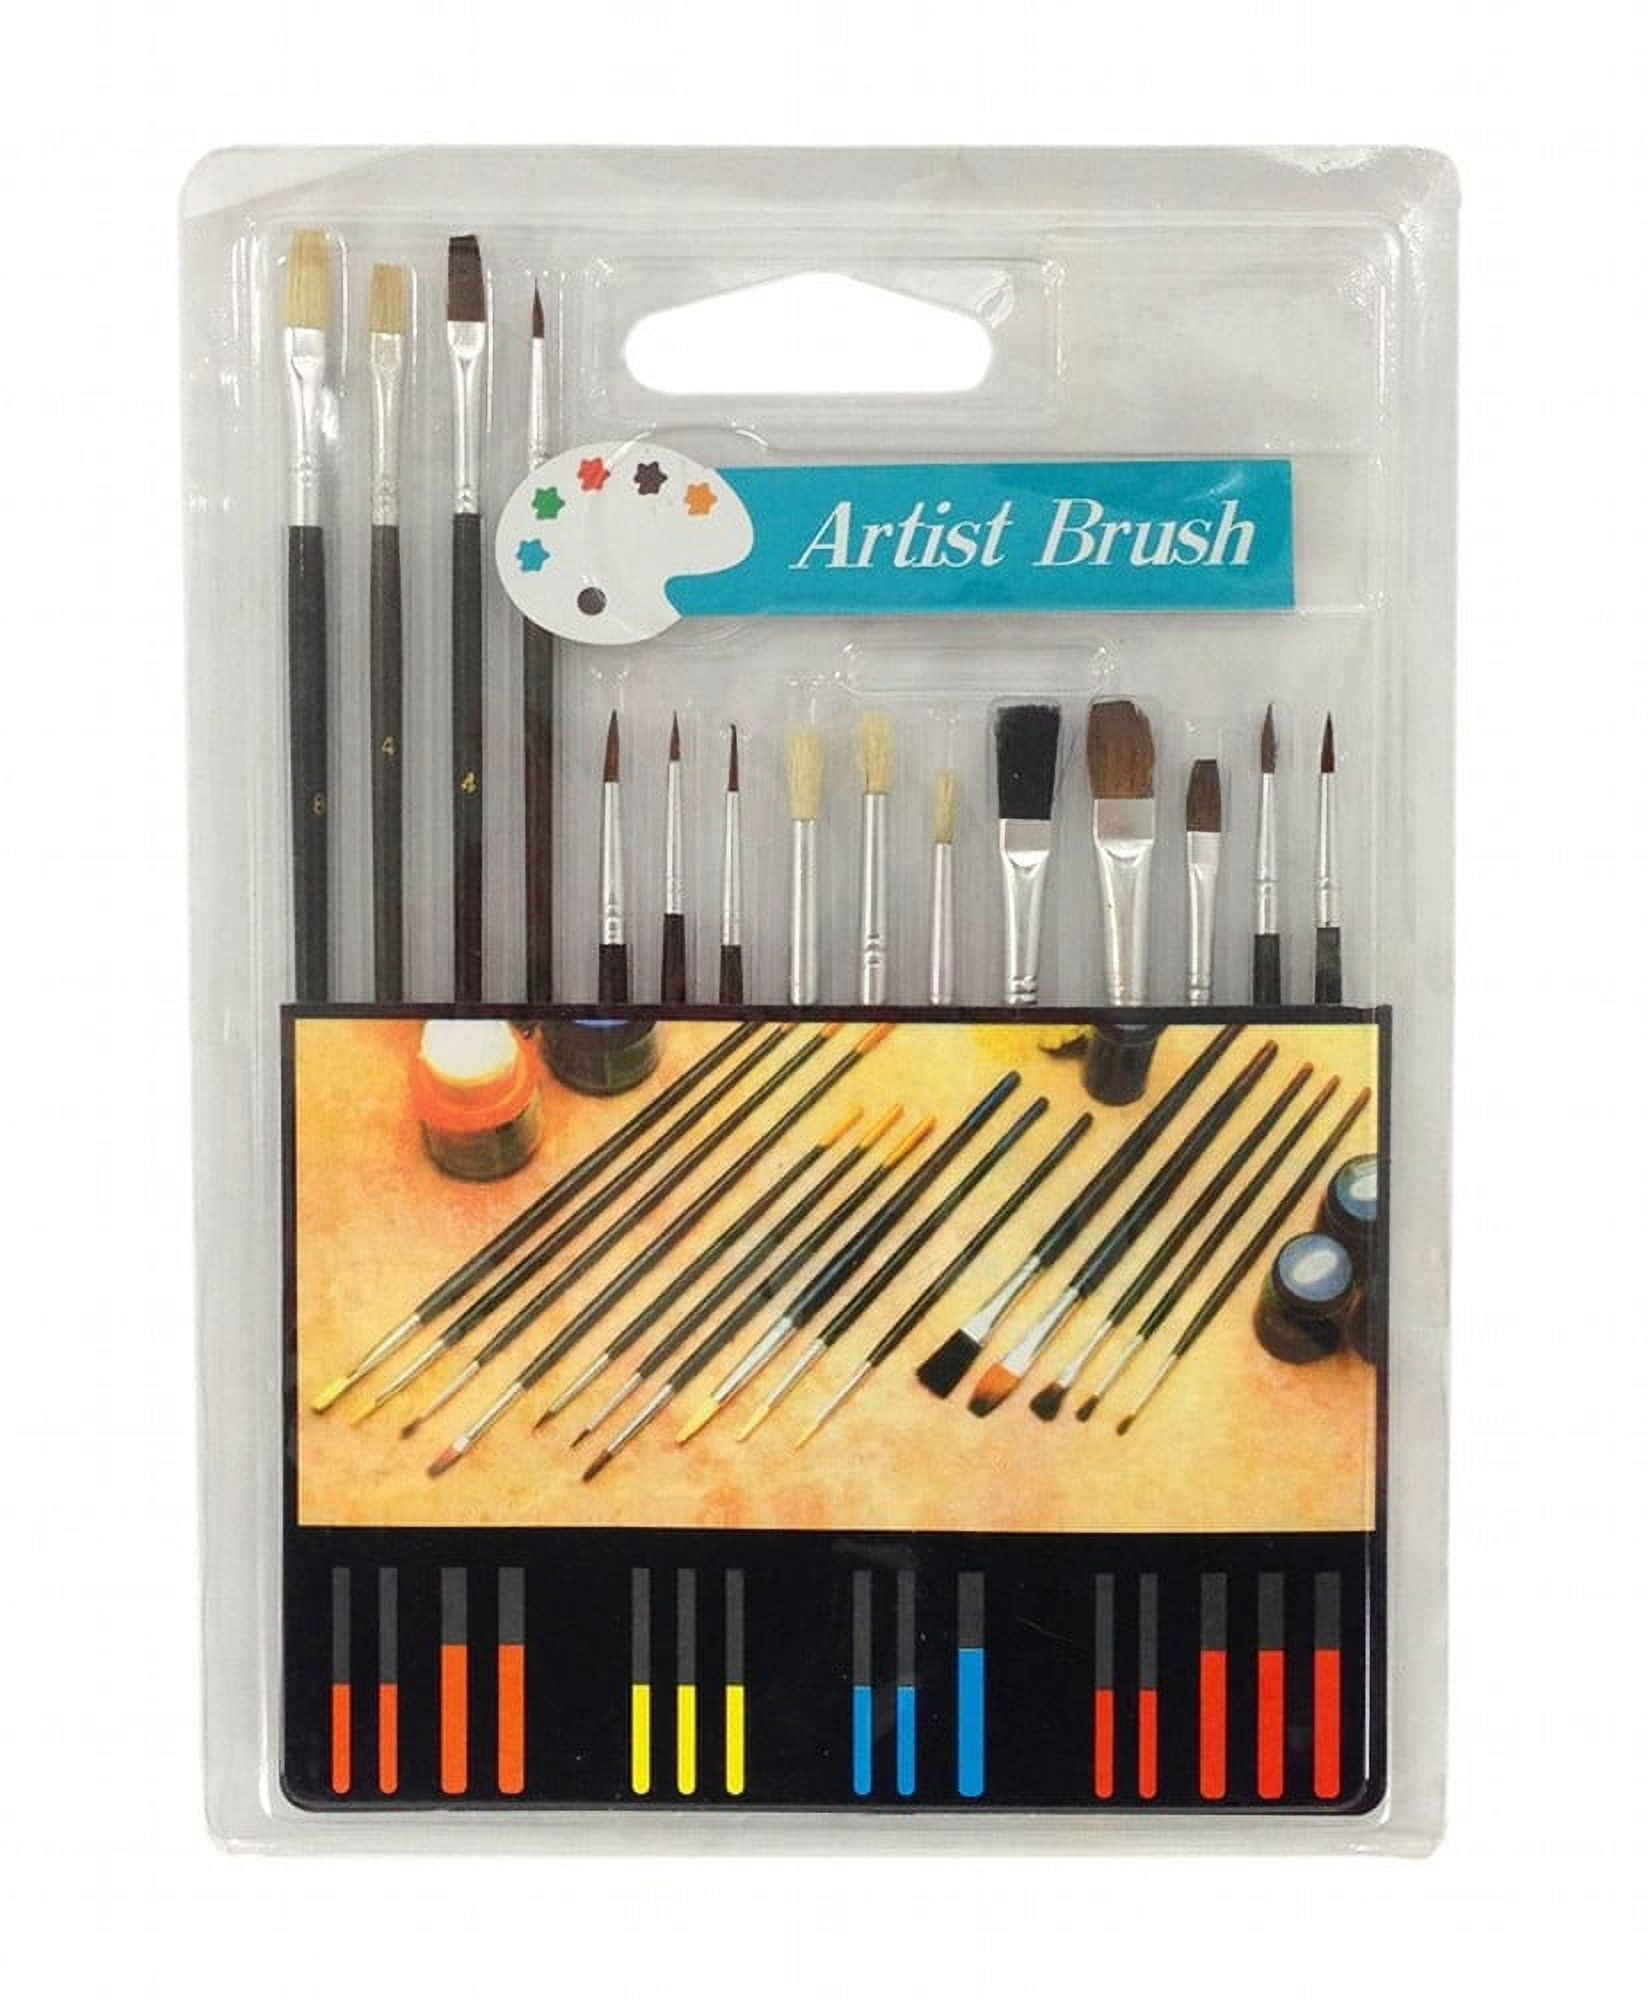 KINGART® All-Purpose Brush Set for Art, Hobby & Craft 15-Pack